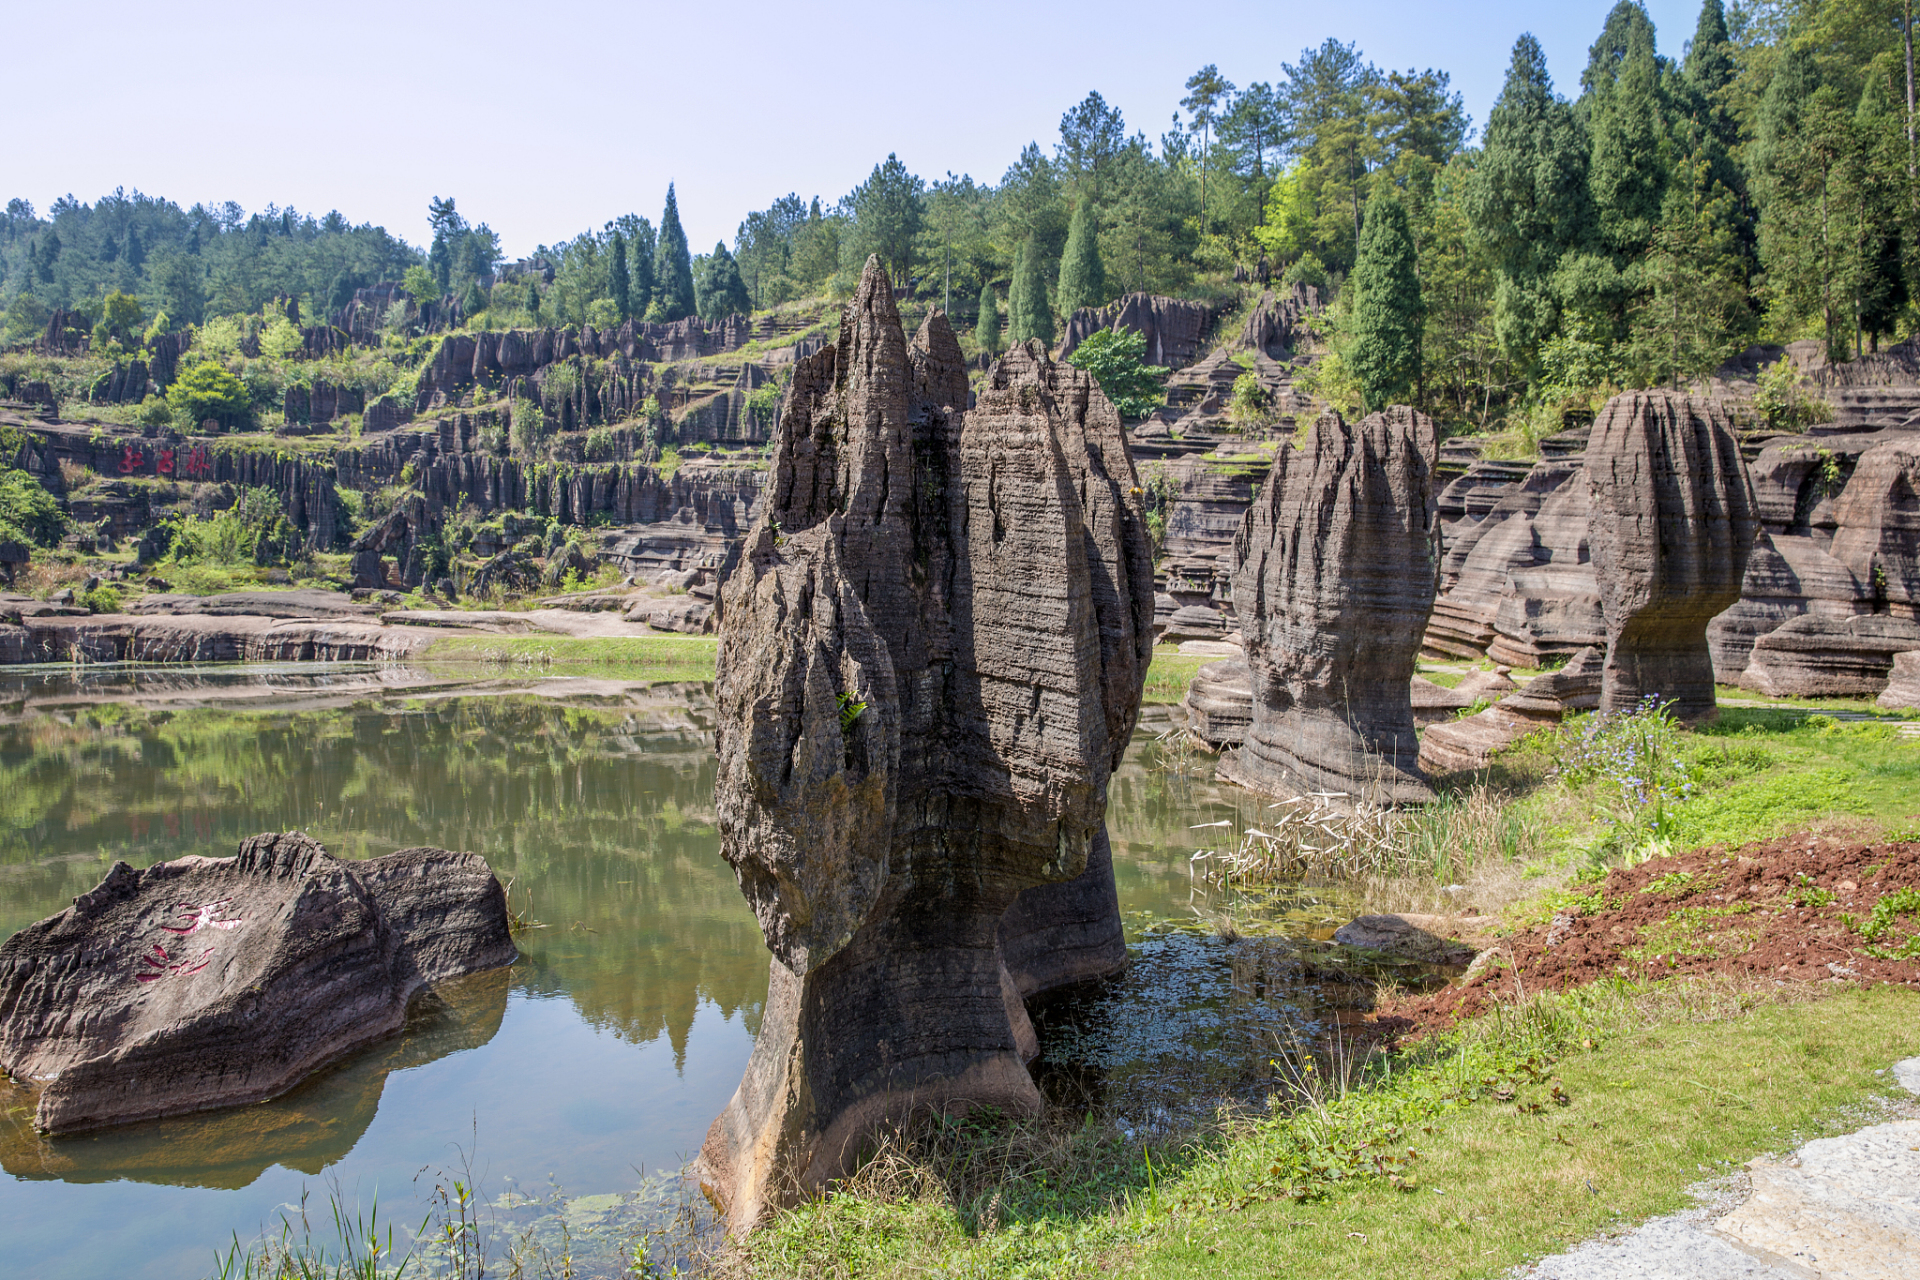 第一奥陶纪石林,是国家aaaa级旅游景区,位于湖北省恩施市太阳河乡境内